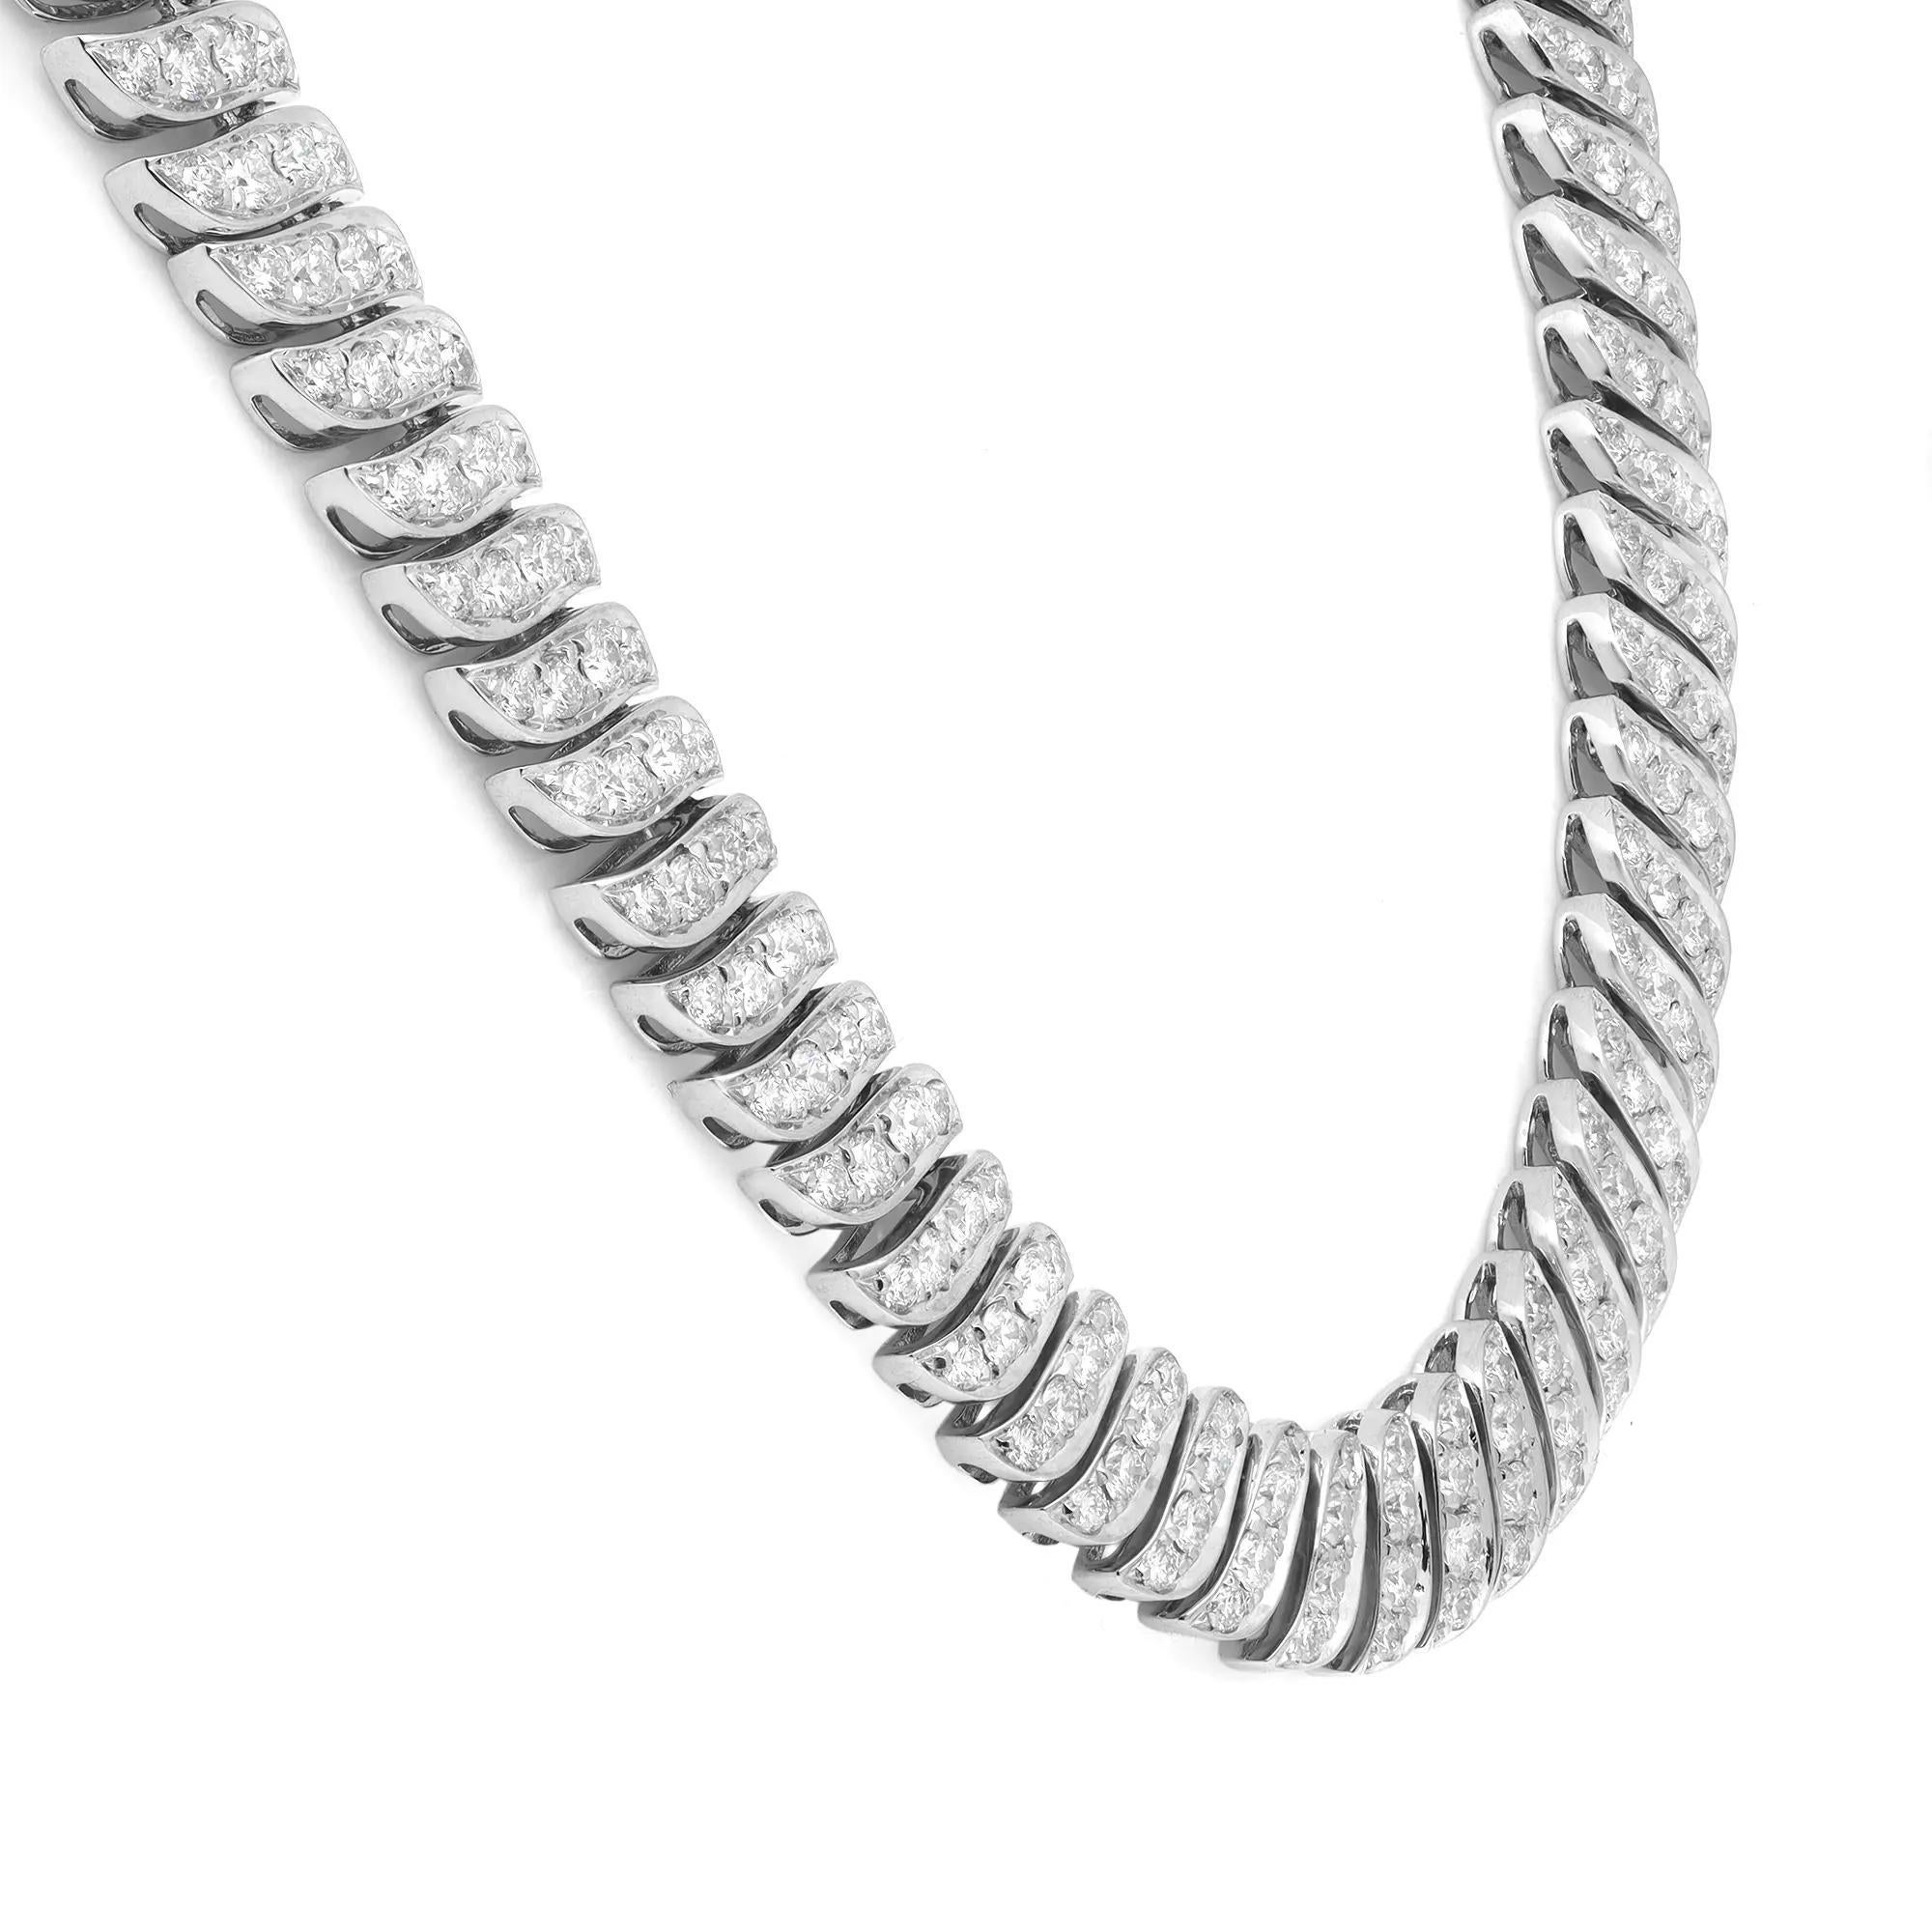 Diese luxuriöse Volldiamanten-Halskette ist mit 520 schimmernden Diamanten im runden Brillantschliff besetzt, die insgesamt 8,33 Karat ergeben. Qualität des Diamanten: Farbe G-H und Reinheit VS-SI. Wunderschön handgefertigt aus 18 Karat Weißgold.